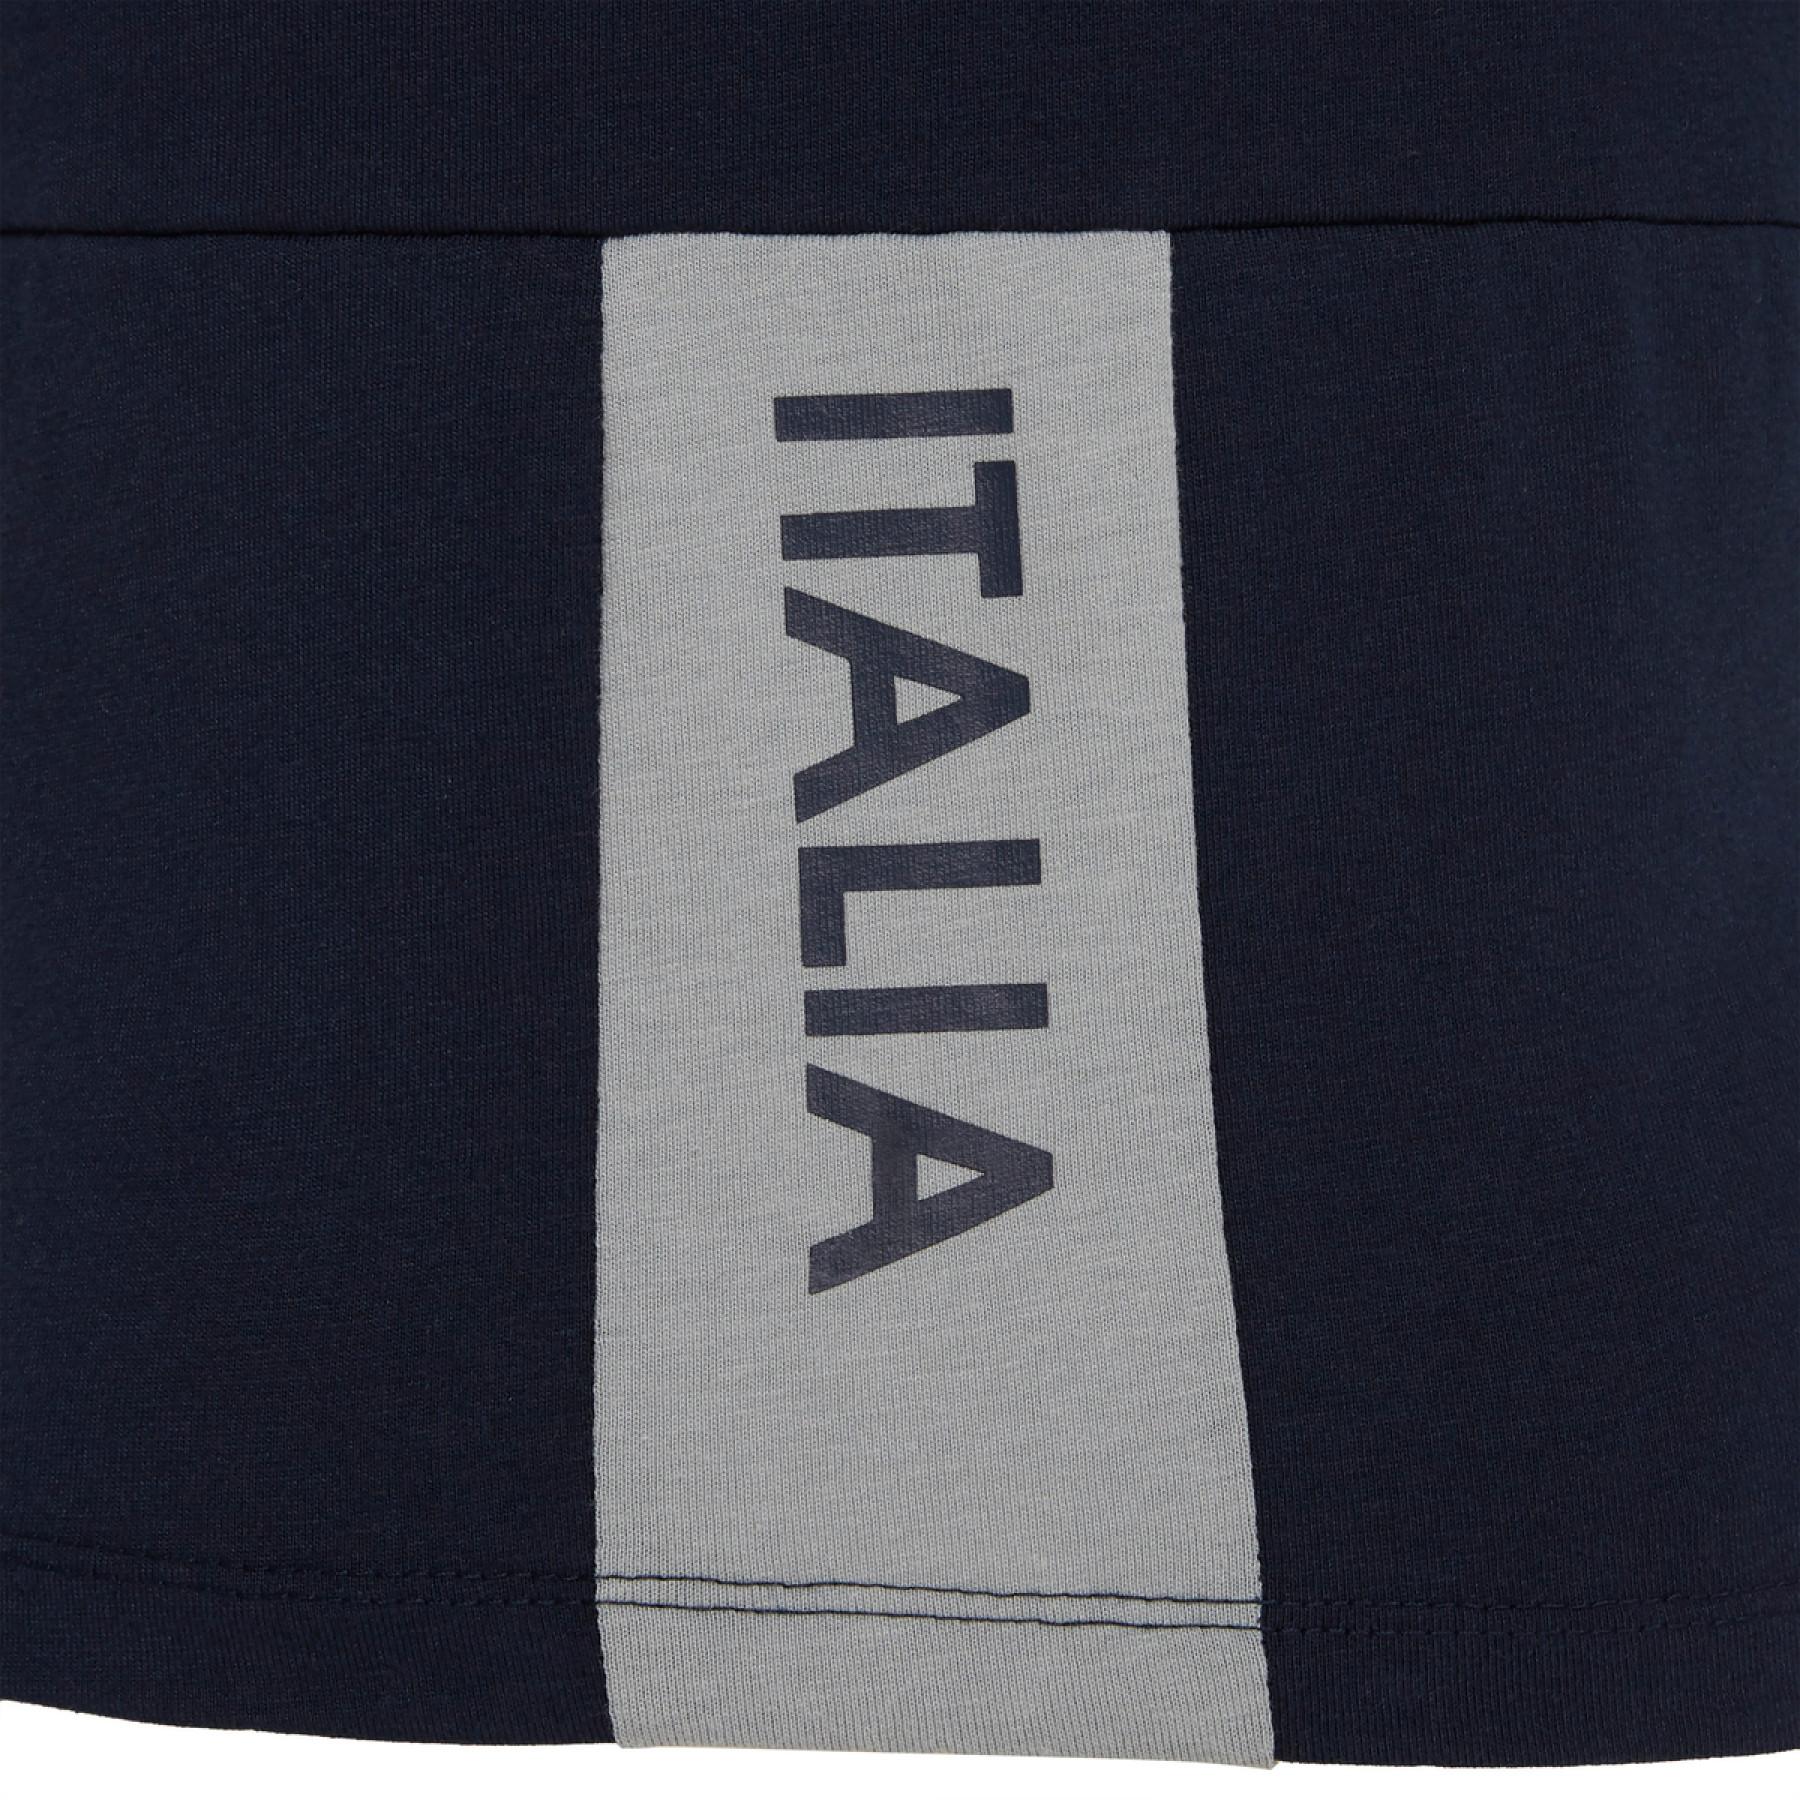 T-shirt criança viagem Italie rugby  2019